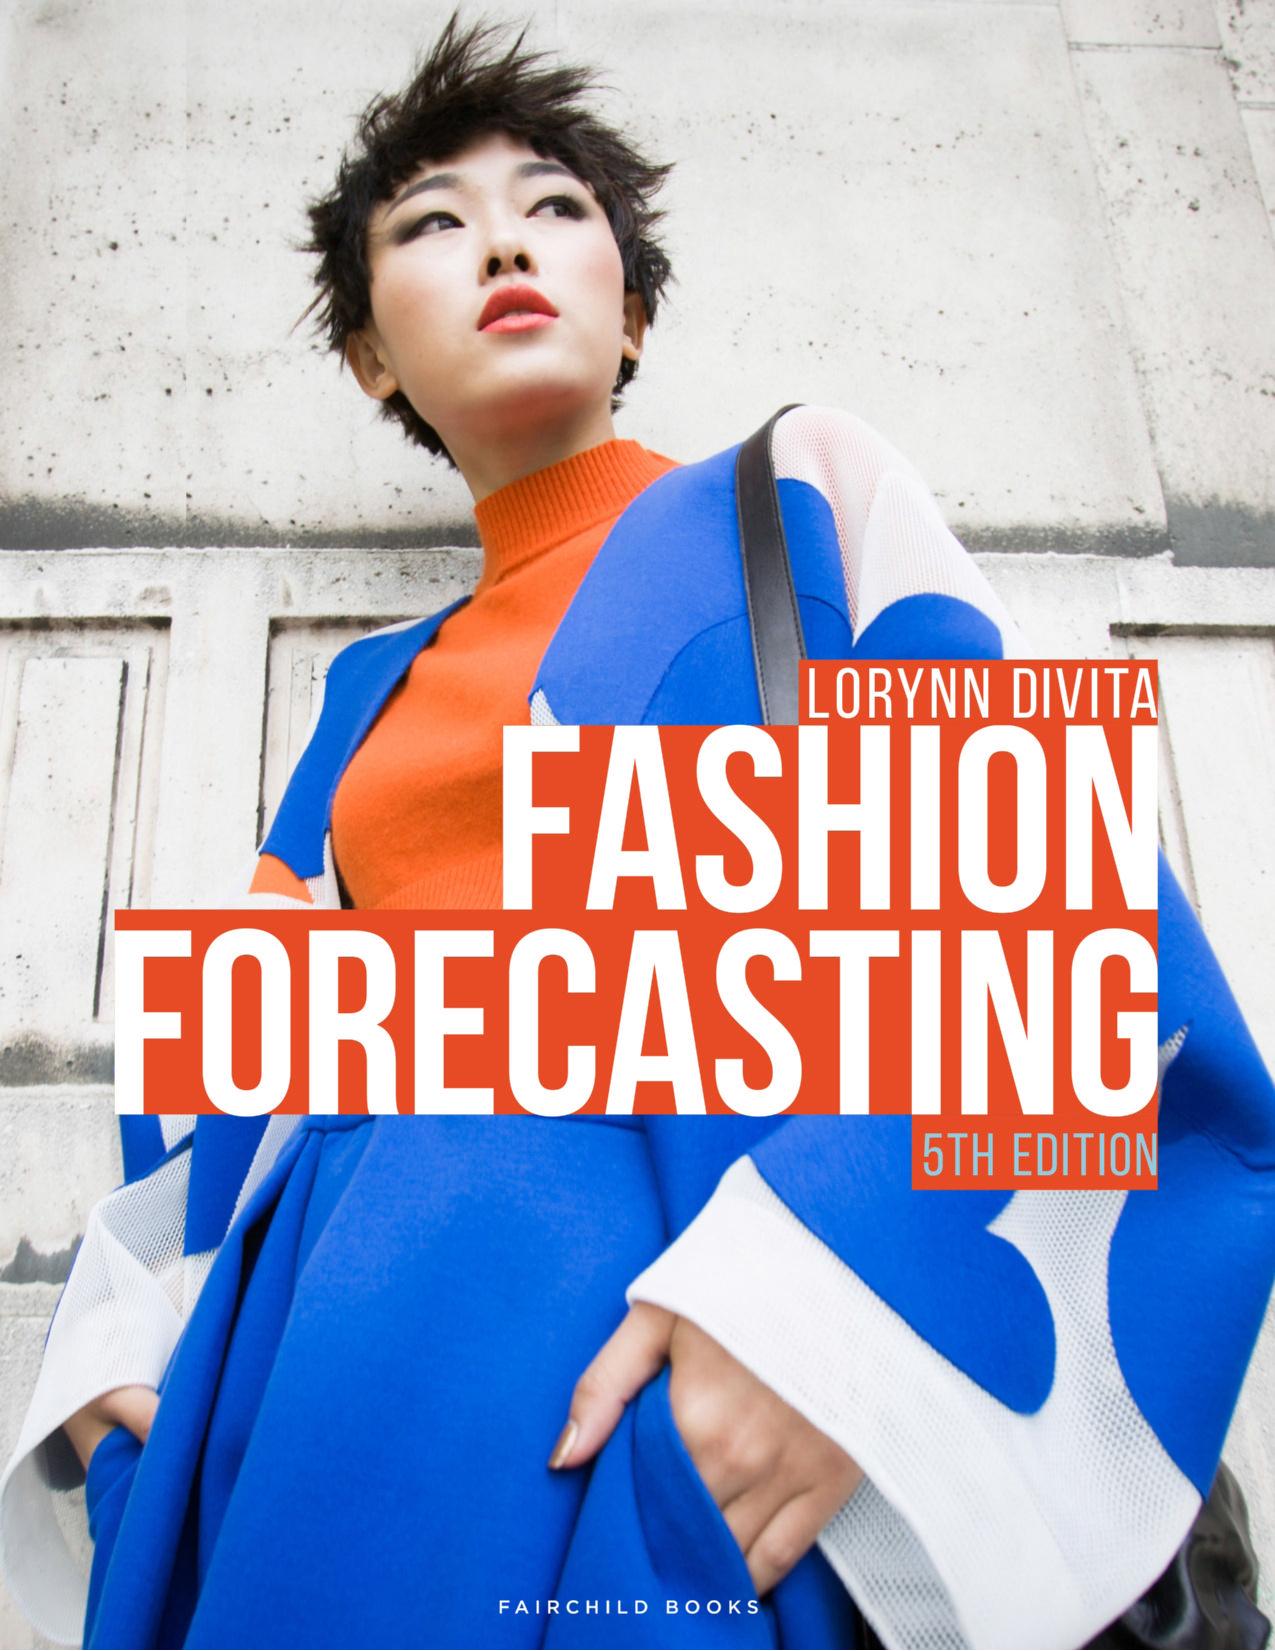 (eBook PDF)Fashion Forecasting 5th Edition by Lorynn Divita